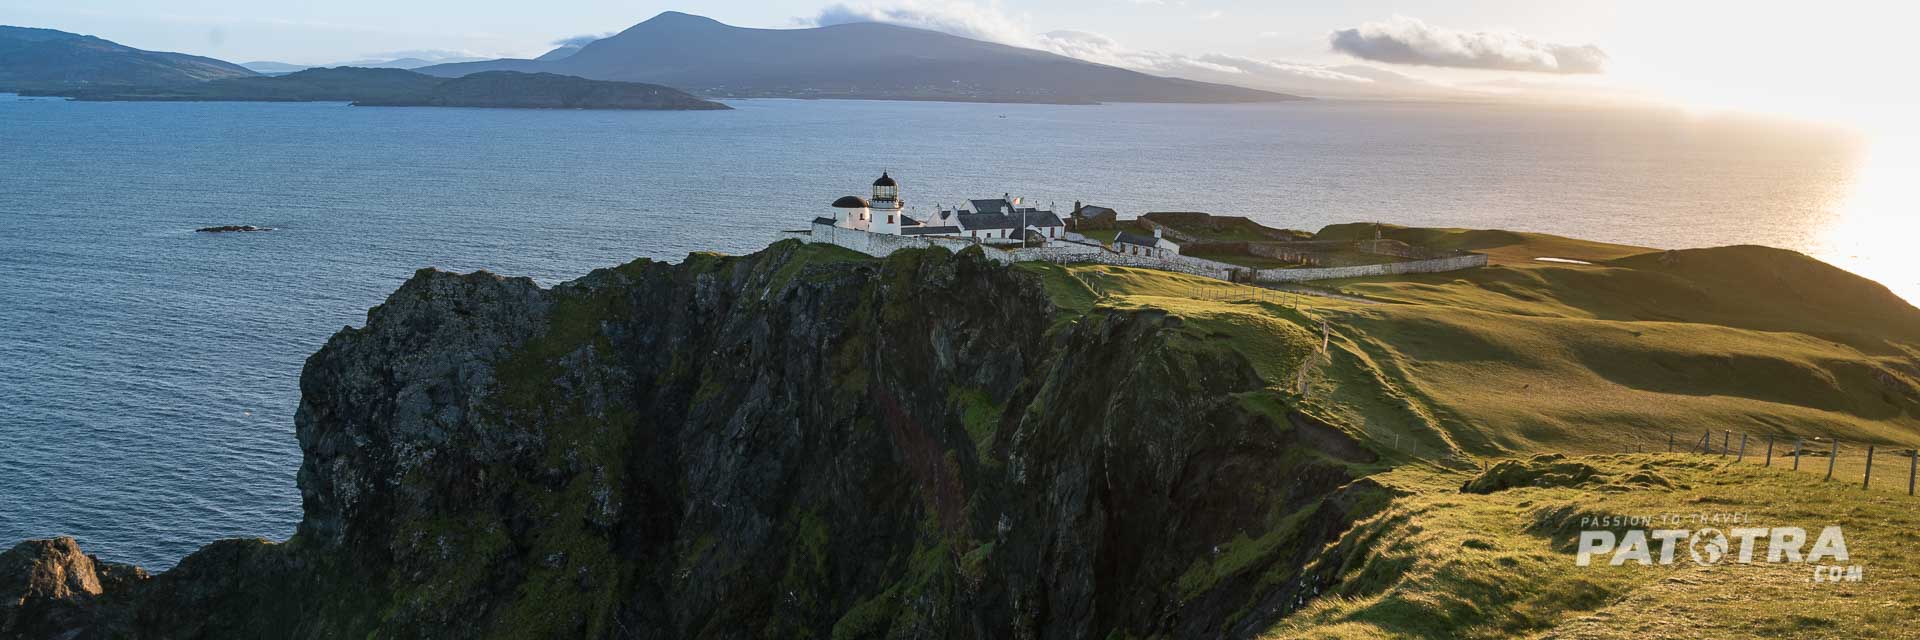 Das Leuchtturm Hotel von Clare Island, Irland